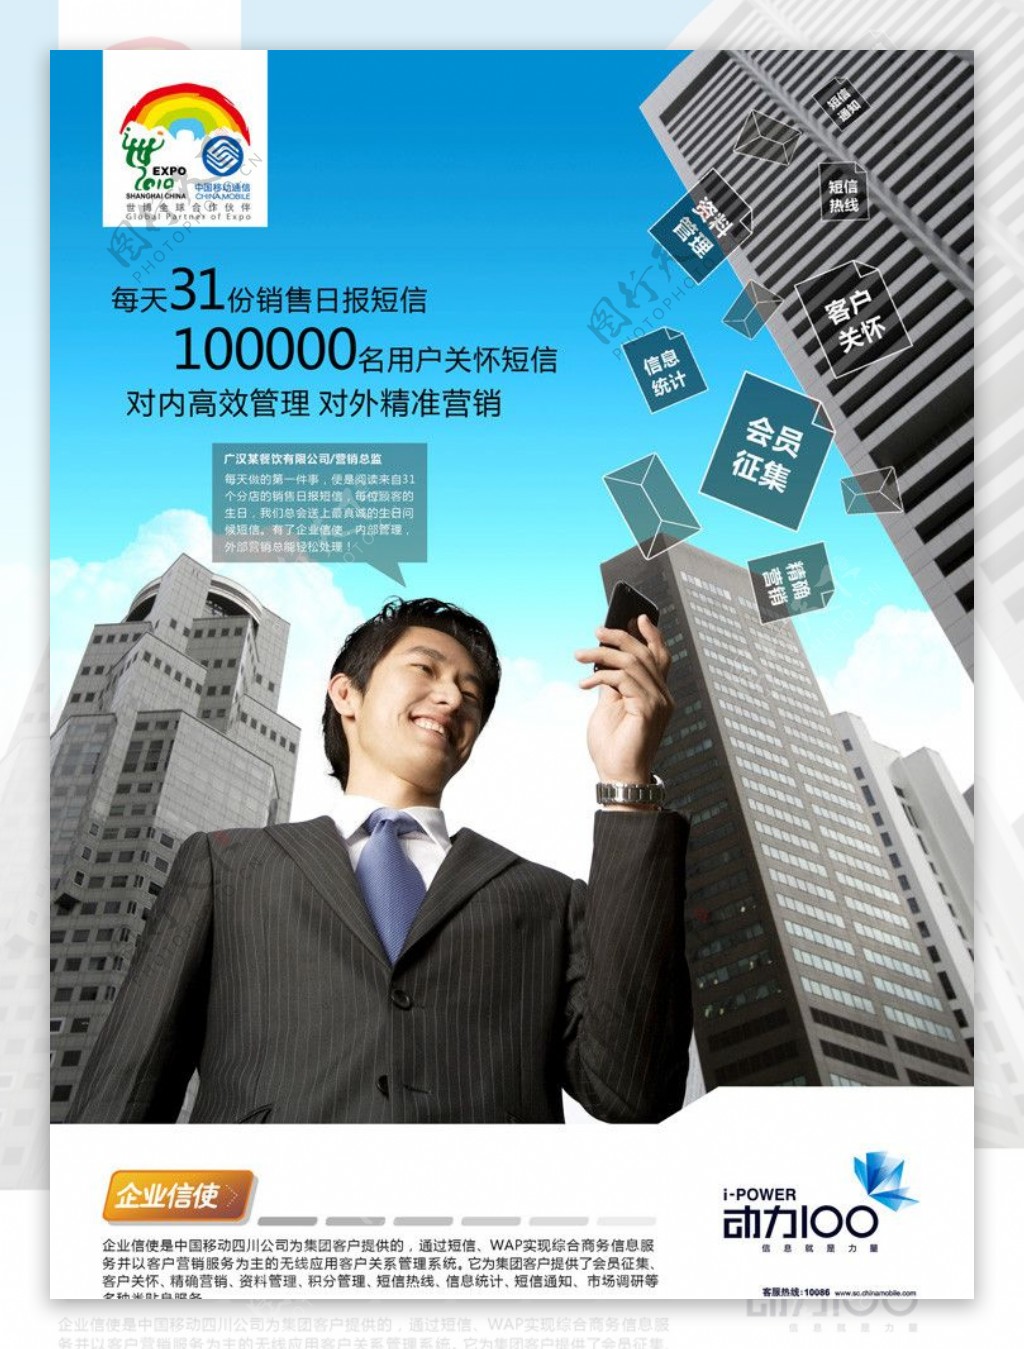 中国移动动力100企业信使标准版DM单正面图片